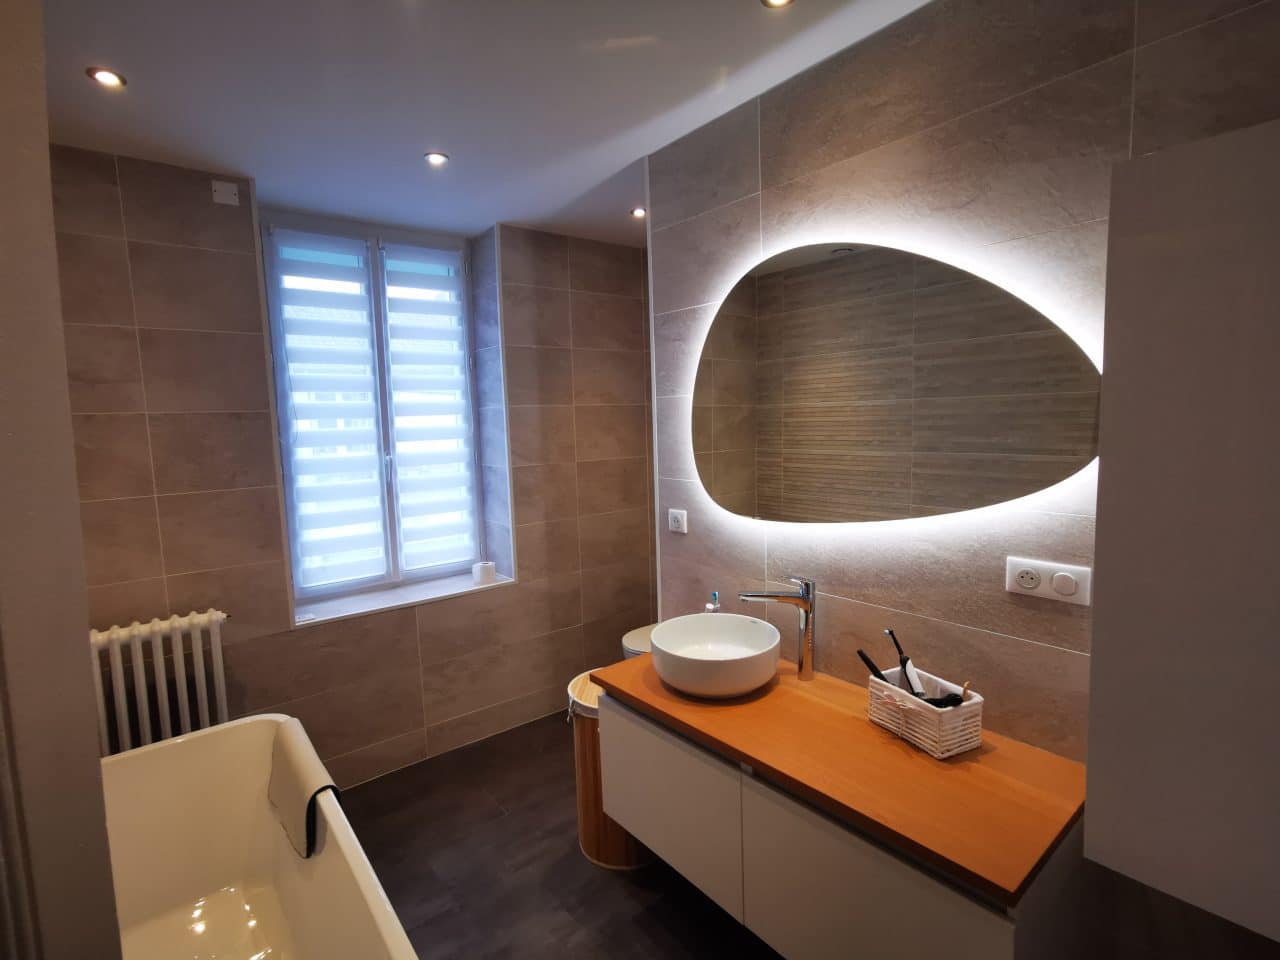 rénovation d'une salle de bain à Brive-la-Gaillarde - vue d'ensemble